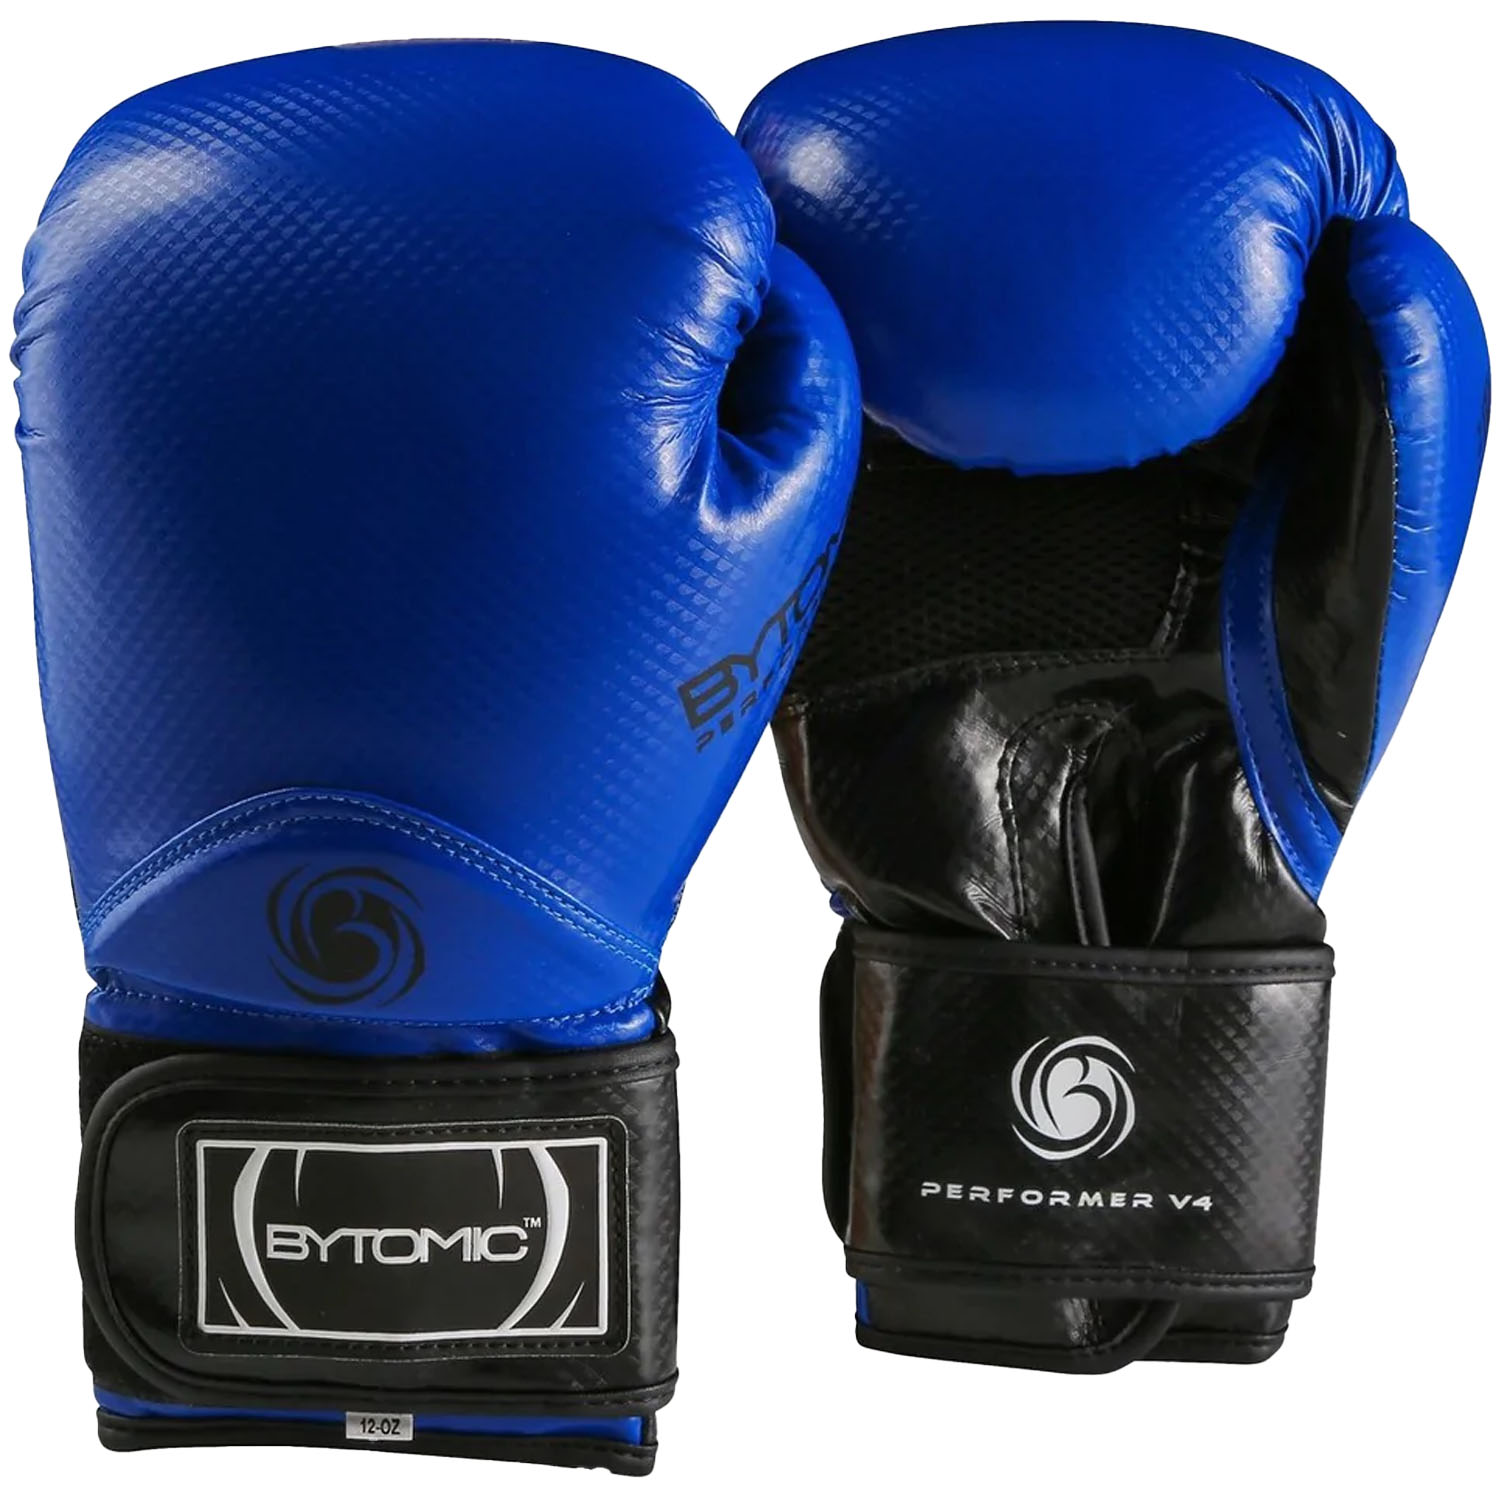 Bytomic Boxing Gloves, Performer, V4, blue, 14 Oz